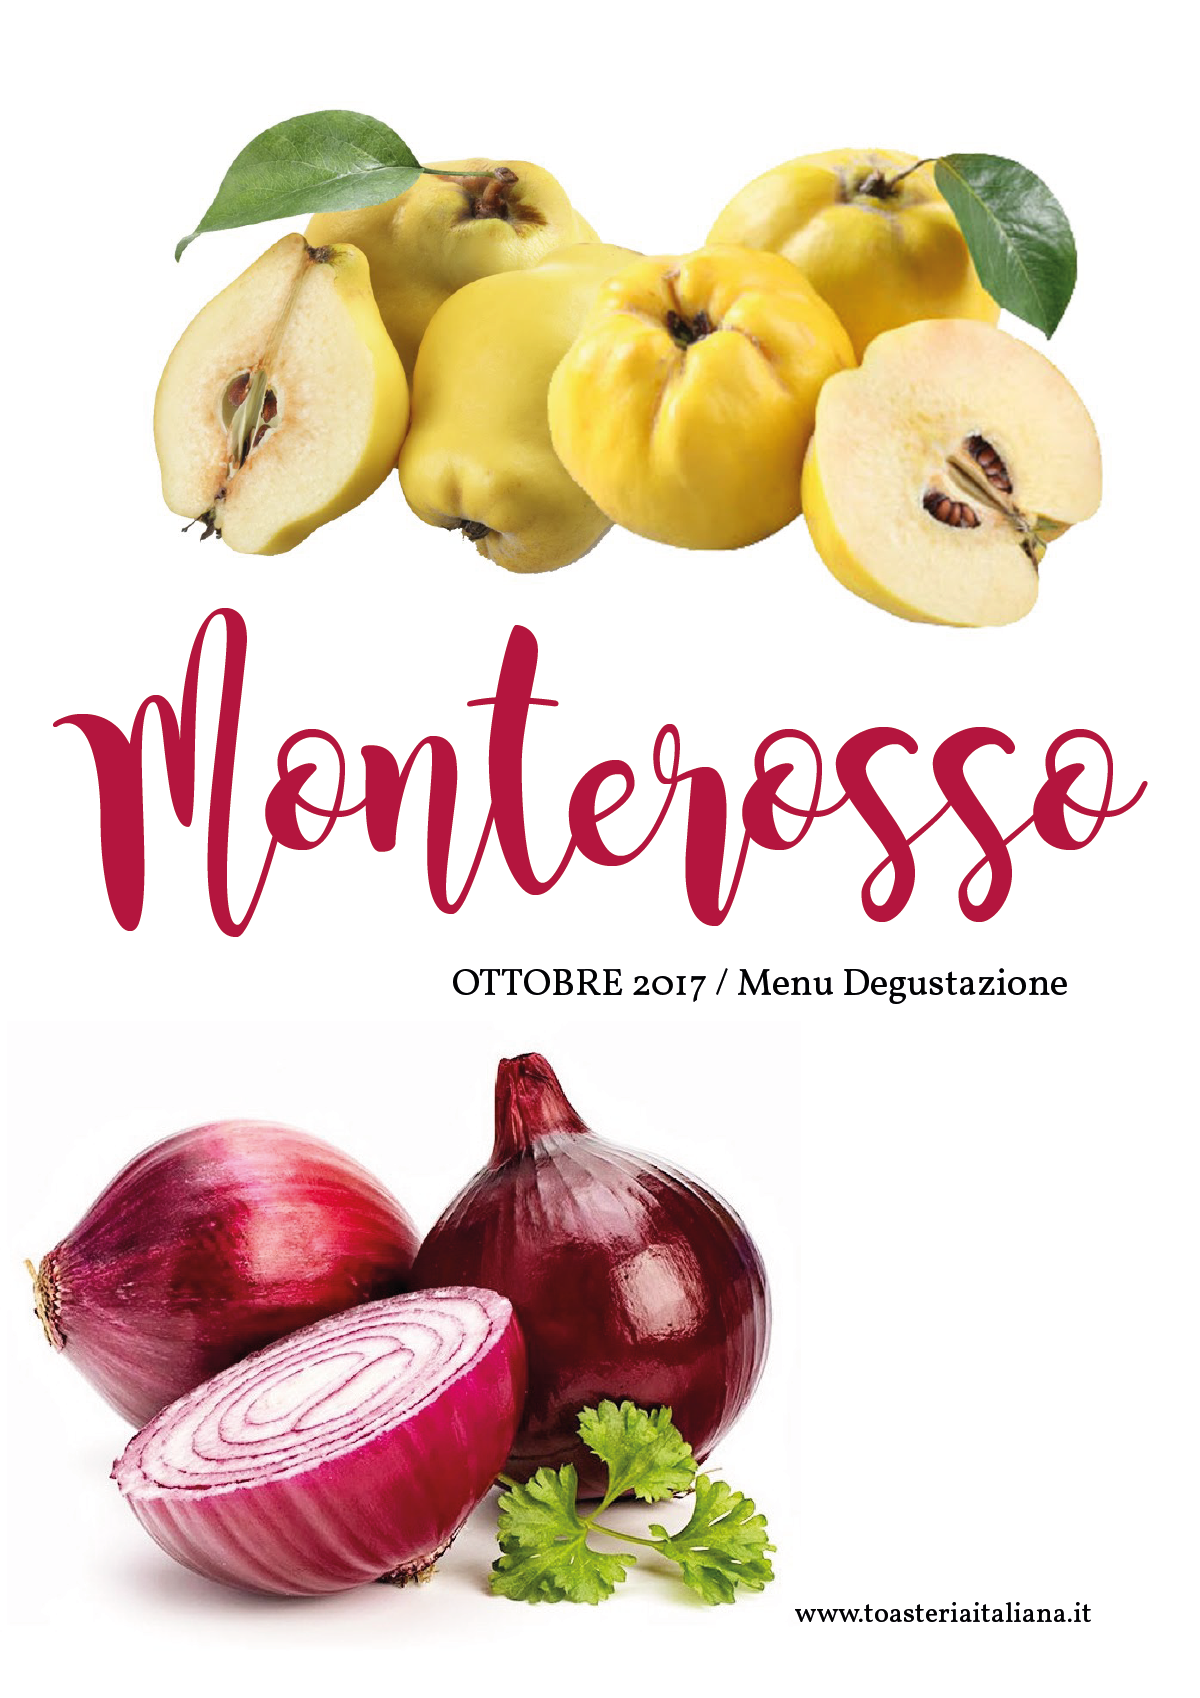 A4-Menu-degustazione-Ottobre-2017-fotografico-postisito